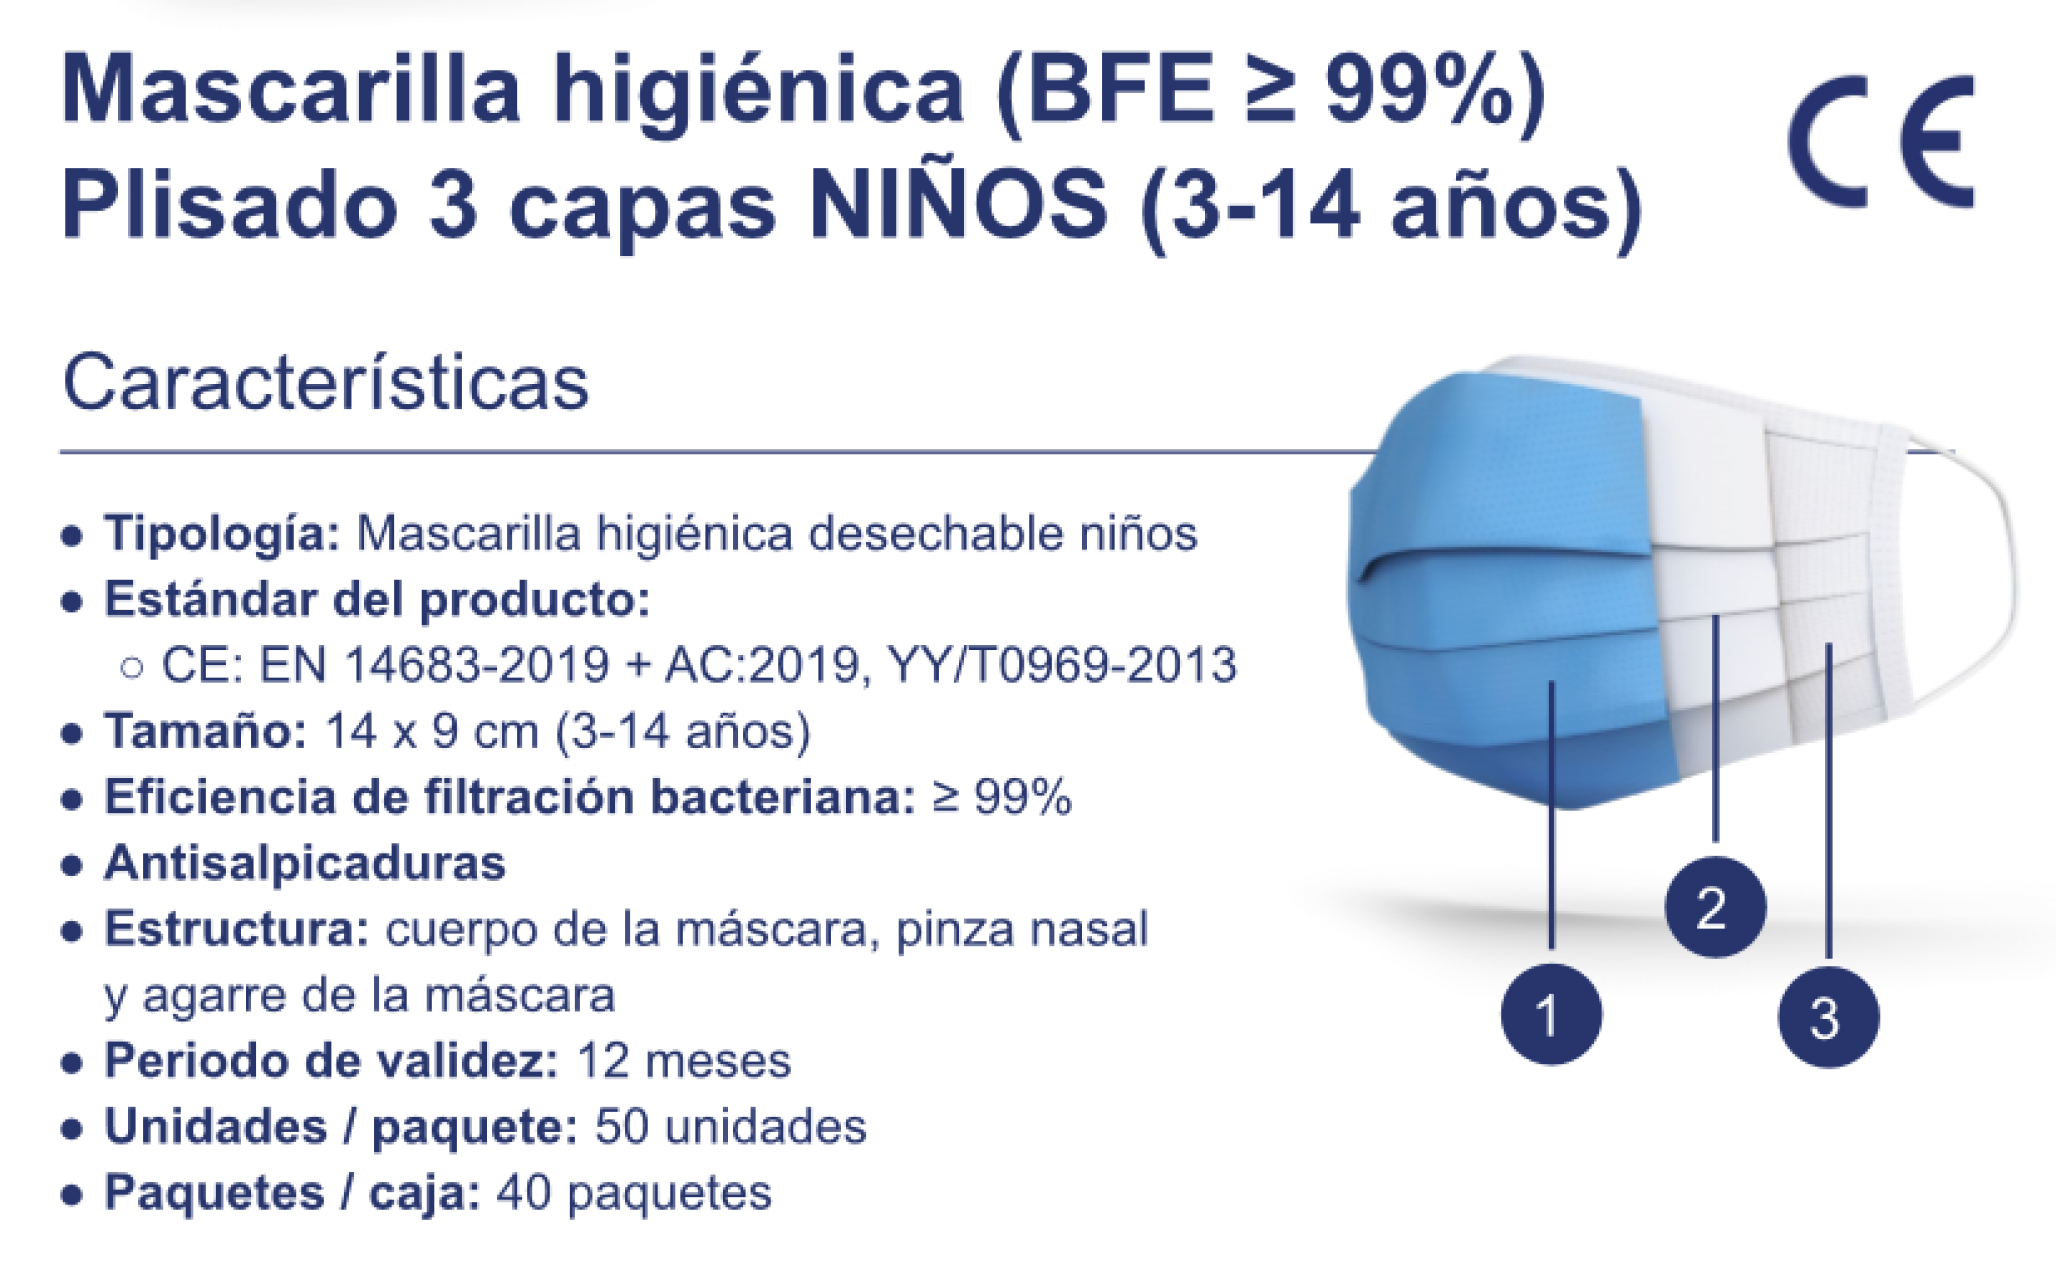 Mascarilla higiénica (BFE ≥ 99) 3 capas (NIÑOS 3-14 AÑOS) CE: EN 14683-2019 + AC:2019